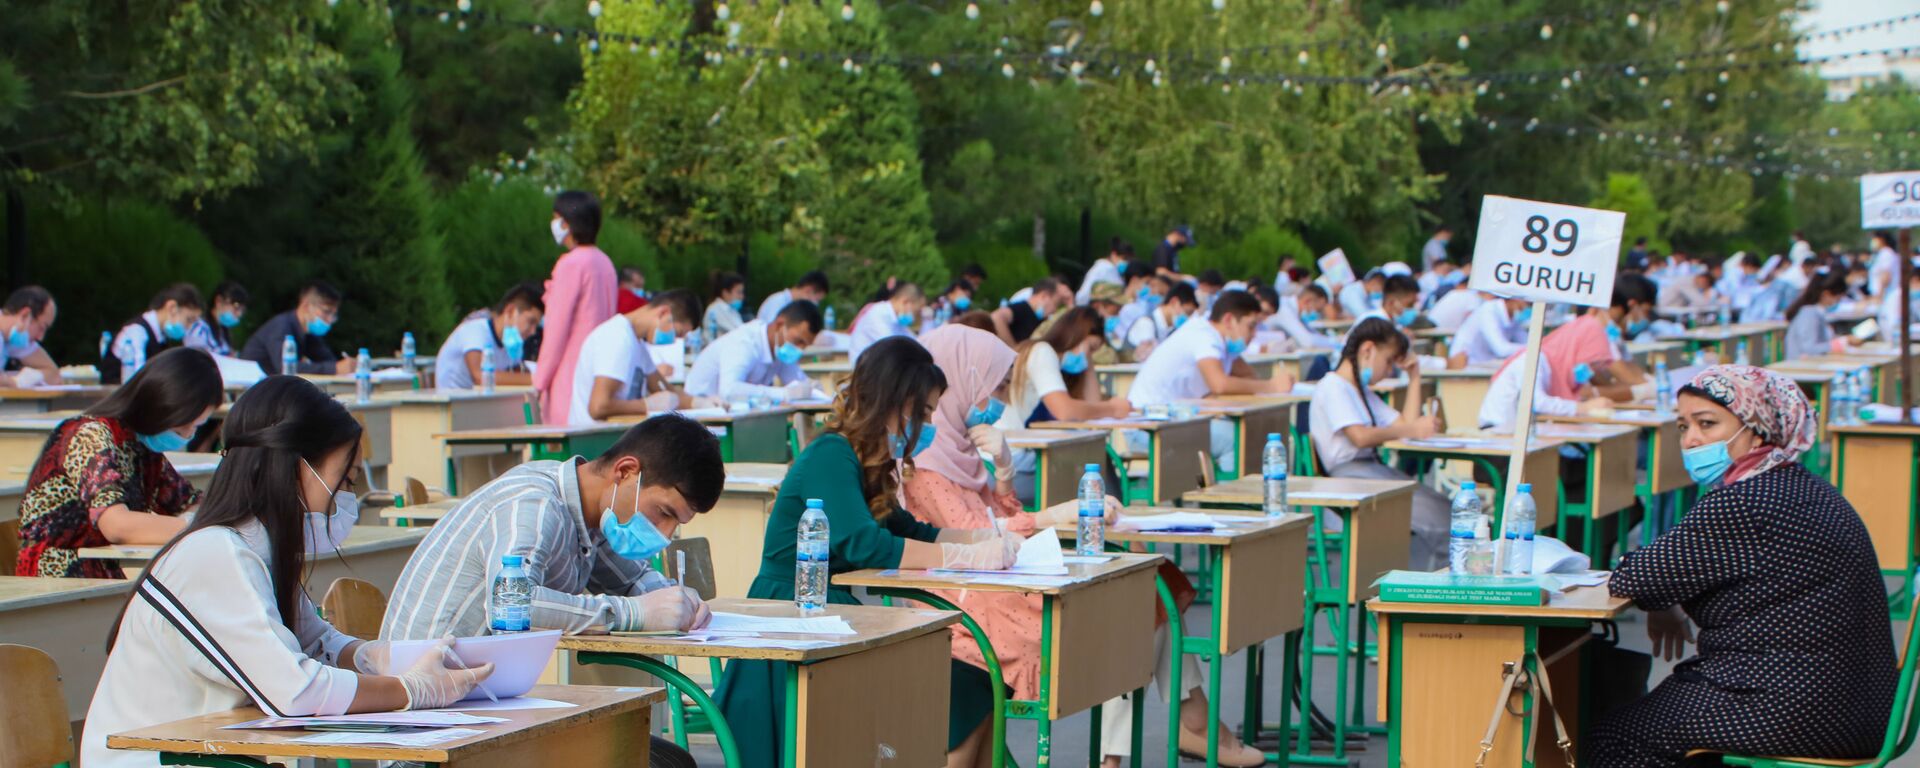 Узбекские студенты сдают вступительные экзамены под открытым небом в Ташкенте - Sputnik Ўзбекистон, 1920, 11.03.2021